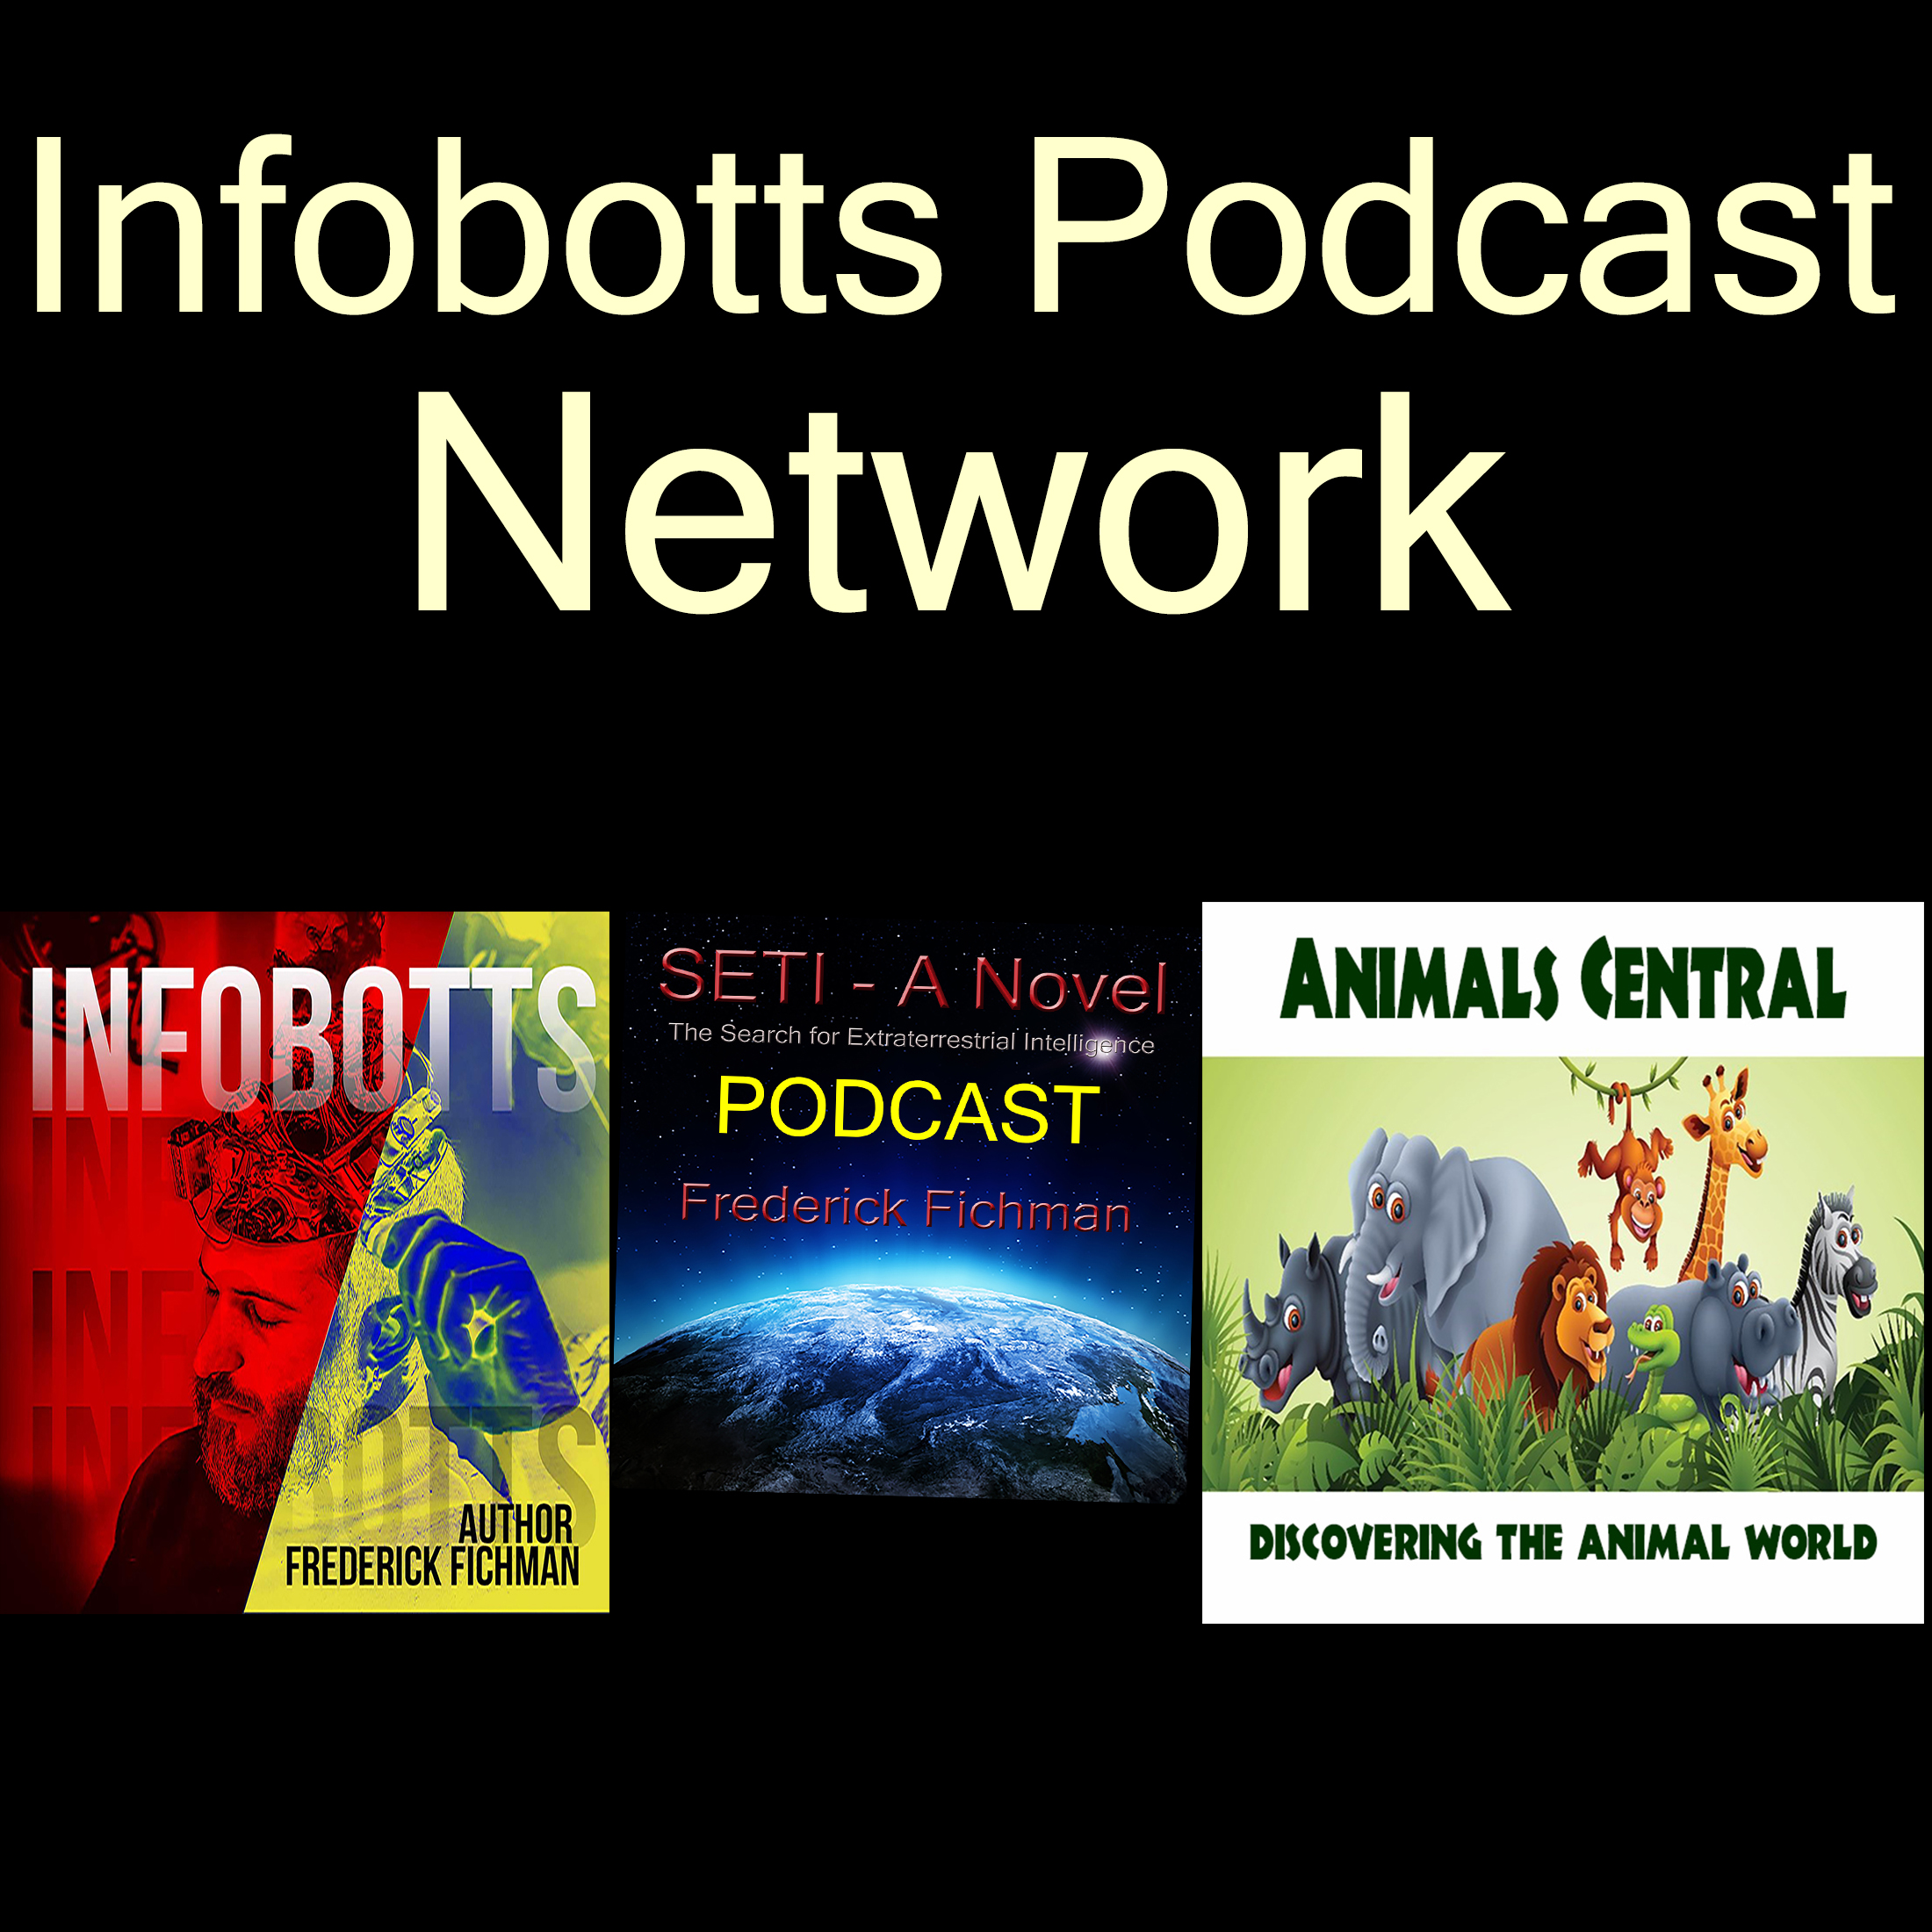 Infobotts Podcast Network